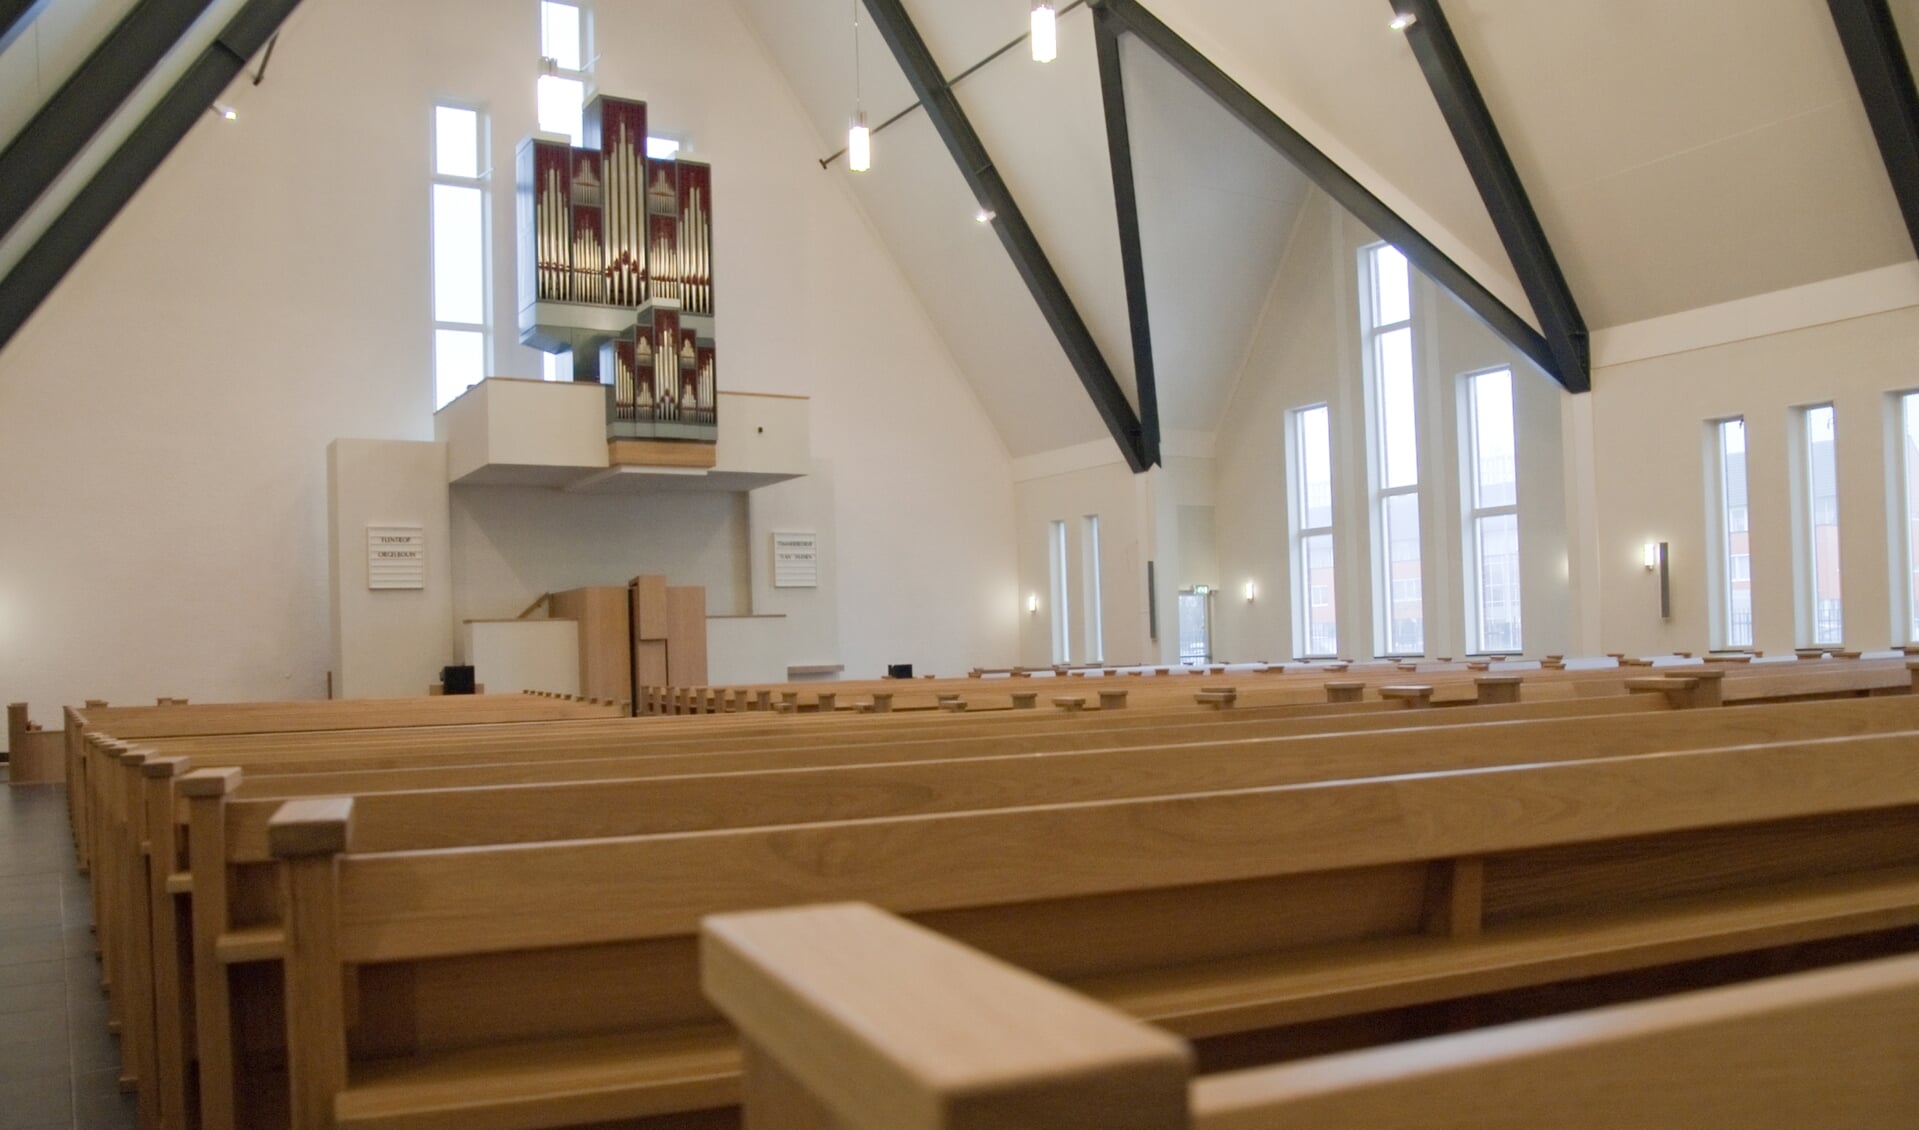 Dit is een beeld dat in veel kerken de komende zondagen bewaarheid wordt (Foto: archief Eilanden-Nieuws).